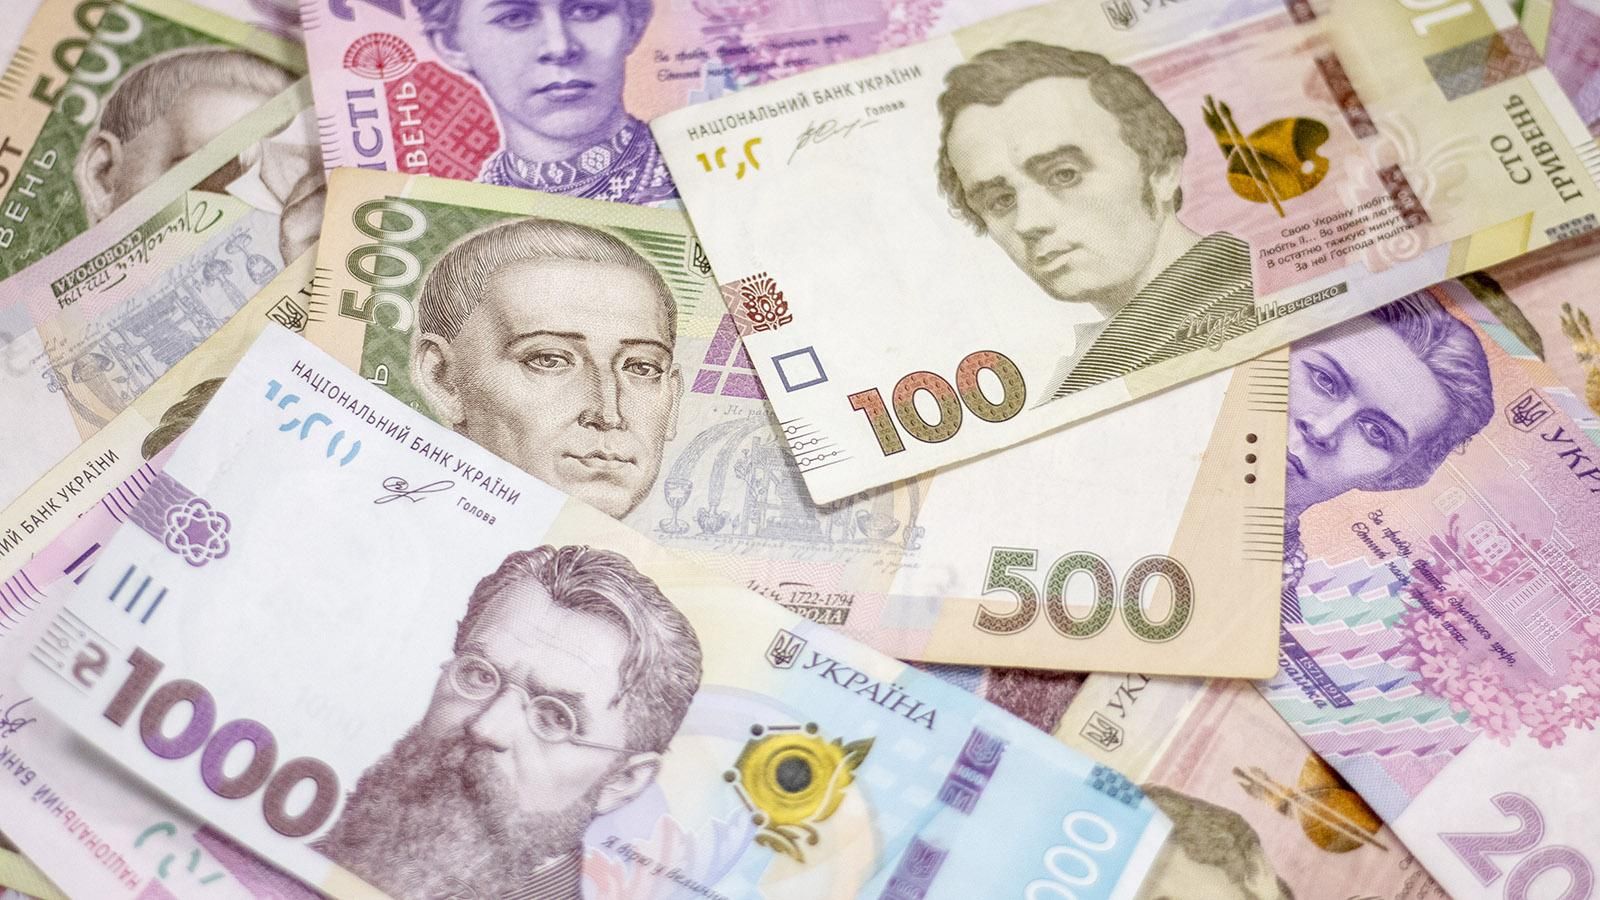 Наличный курс евро, доллара на 3 ноября 2020 2020 – курс валют